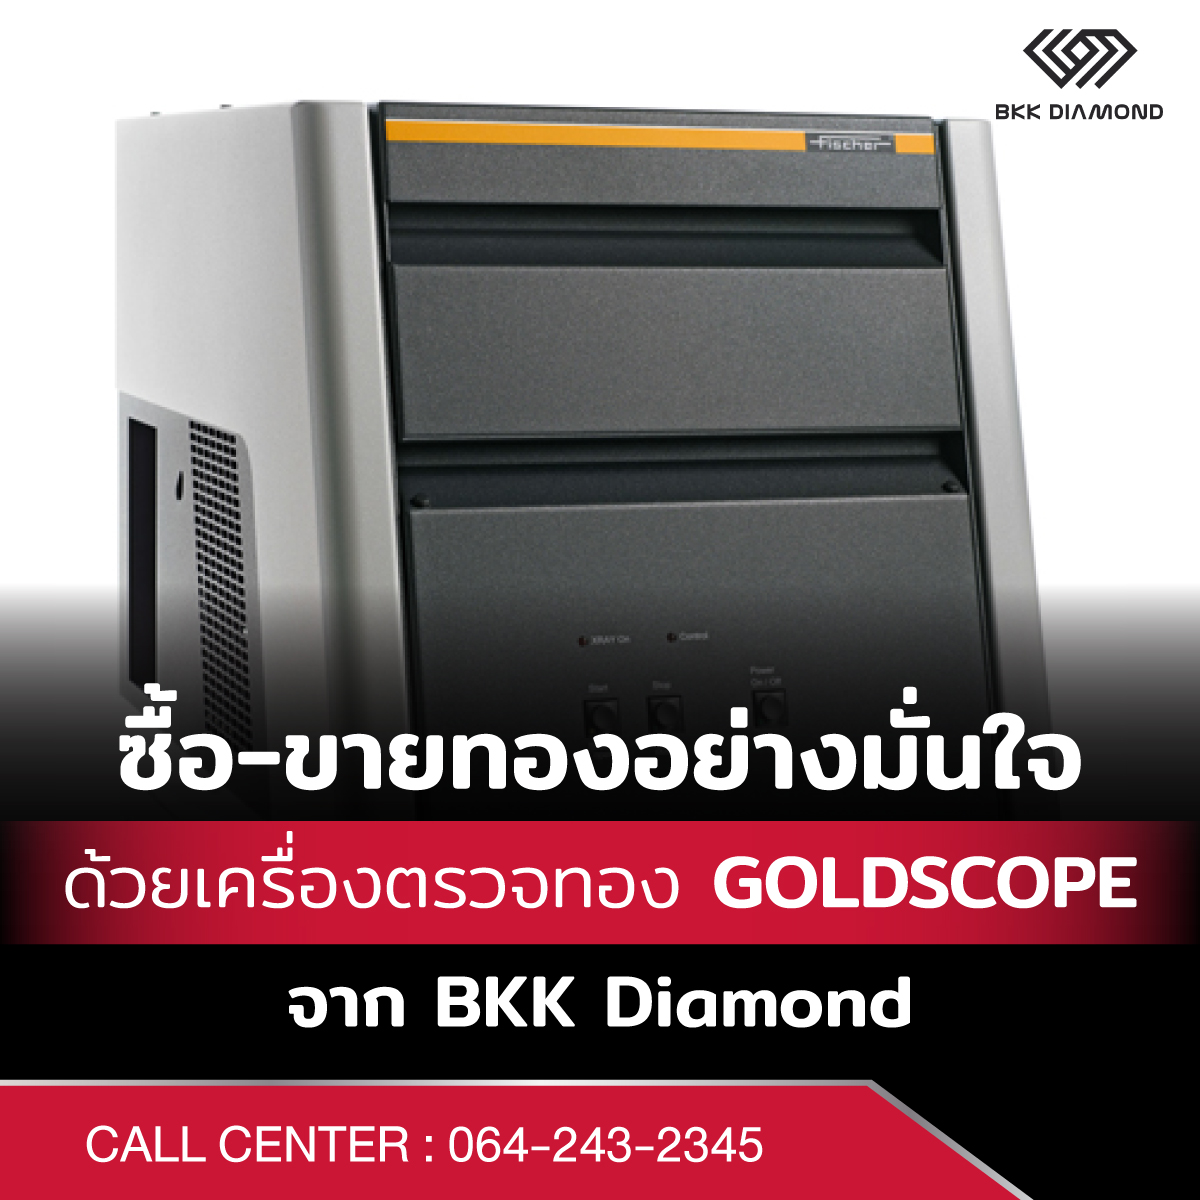 ซื้อ-ขายทองอย่างมั่นใจด้วยเครื่องตรวจทอง GOLDSCOPE จาก BKK Diamond